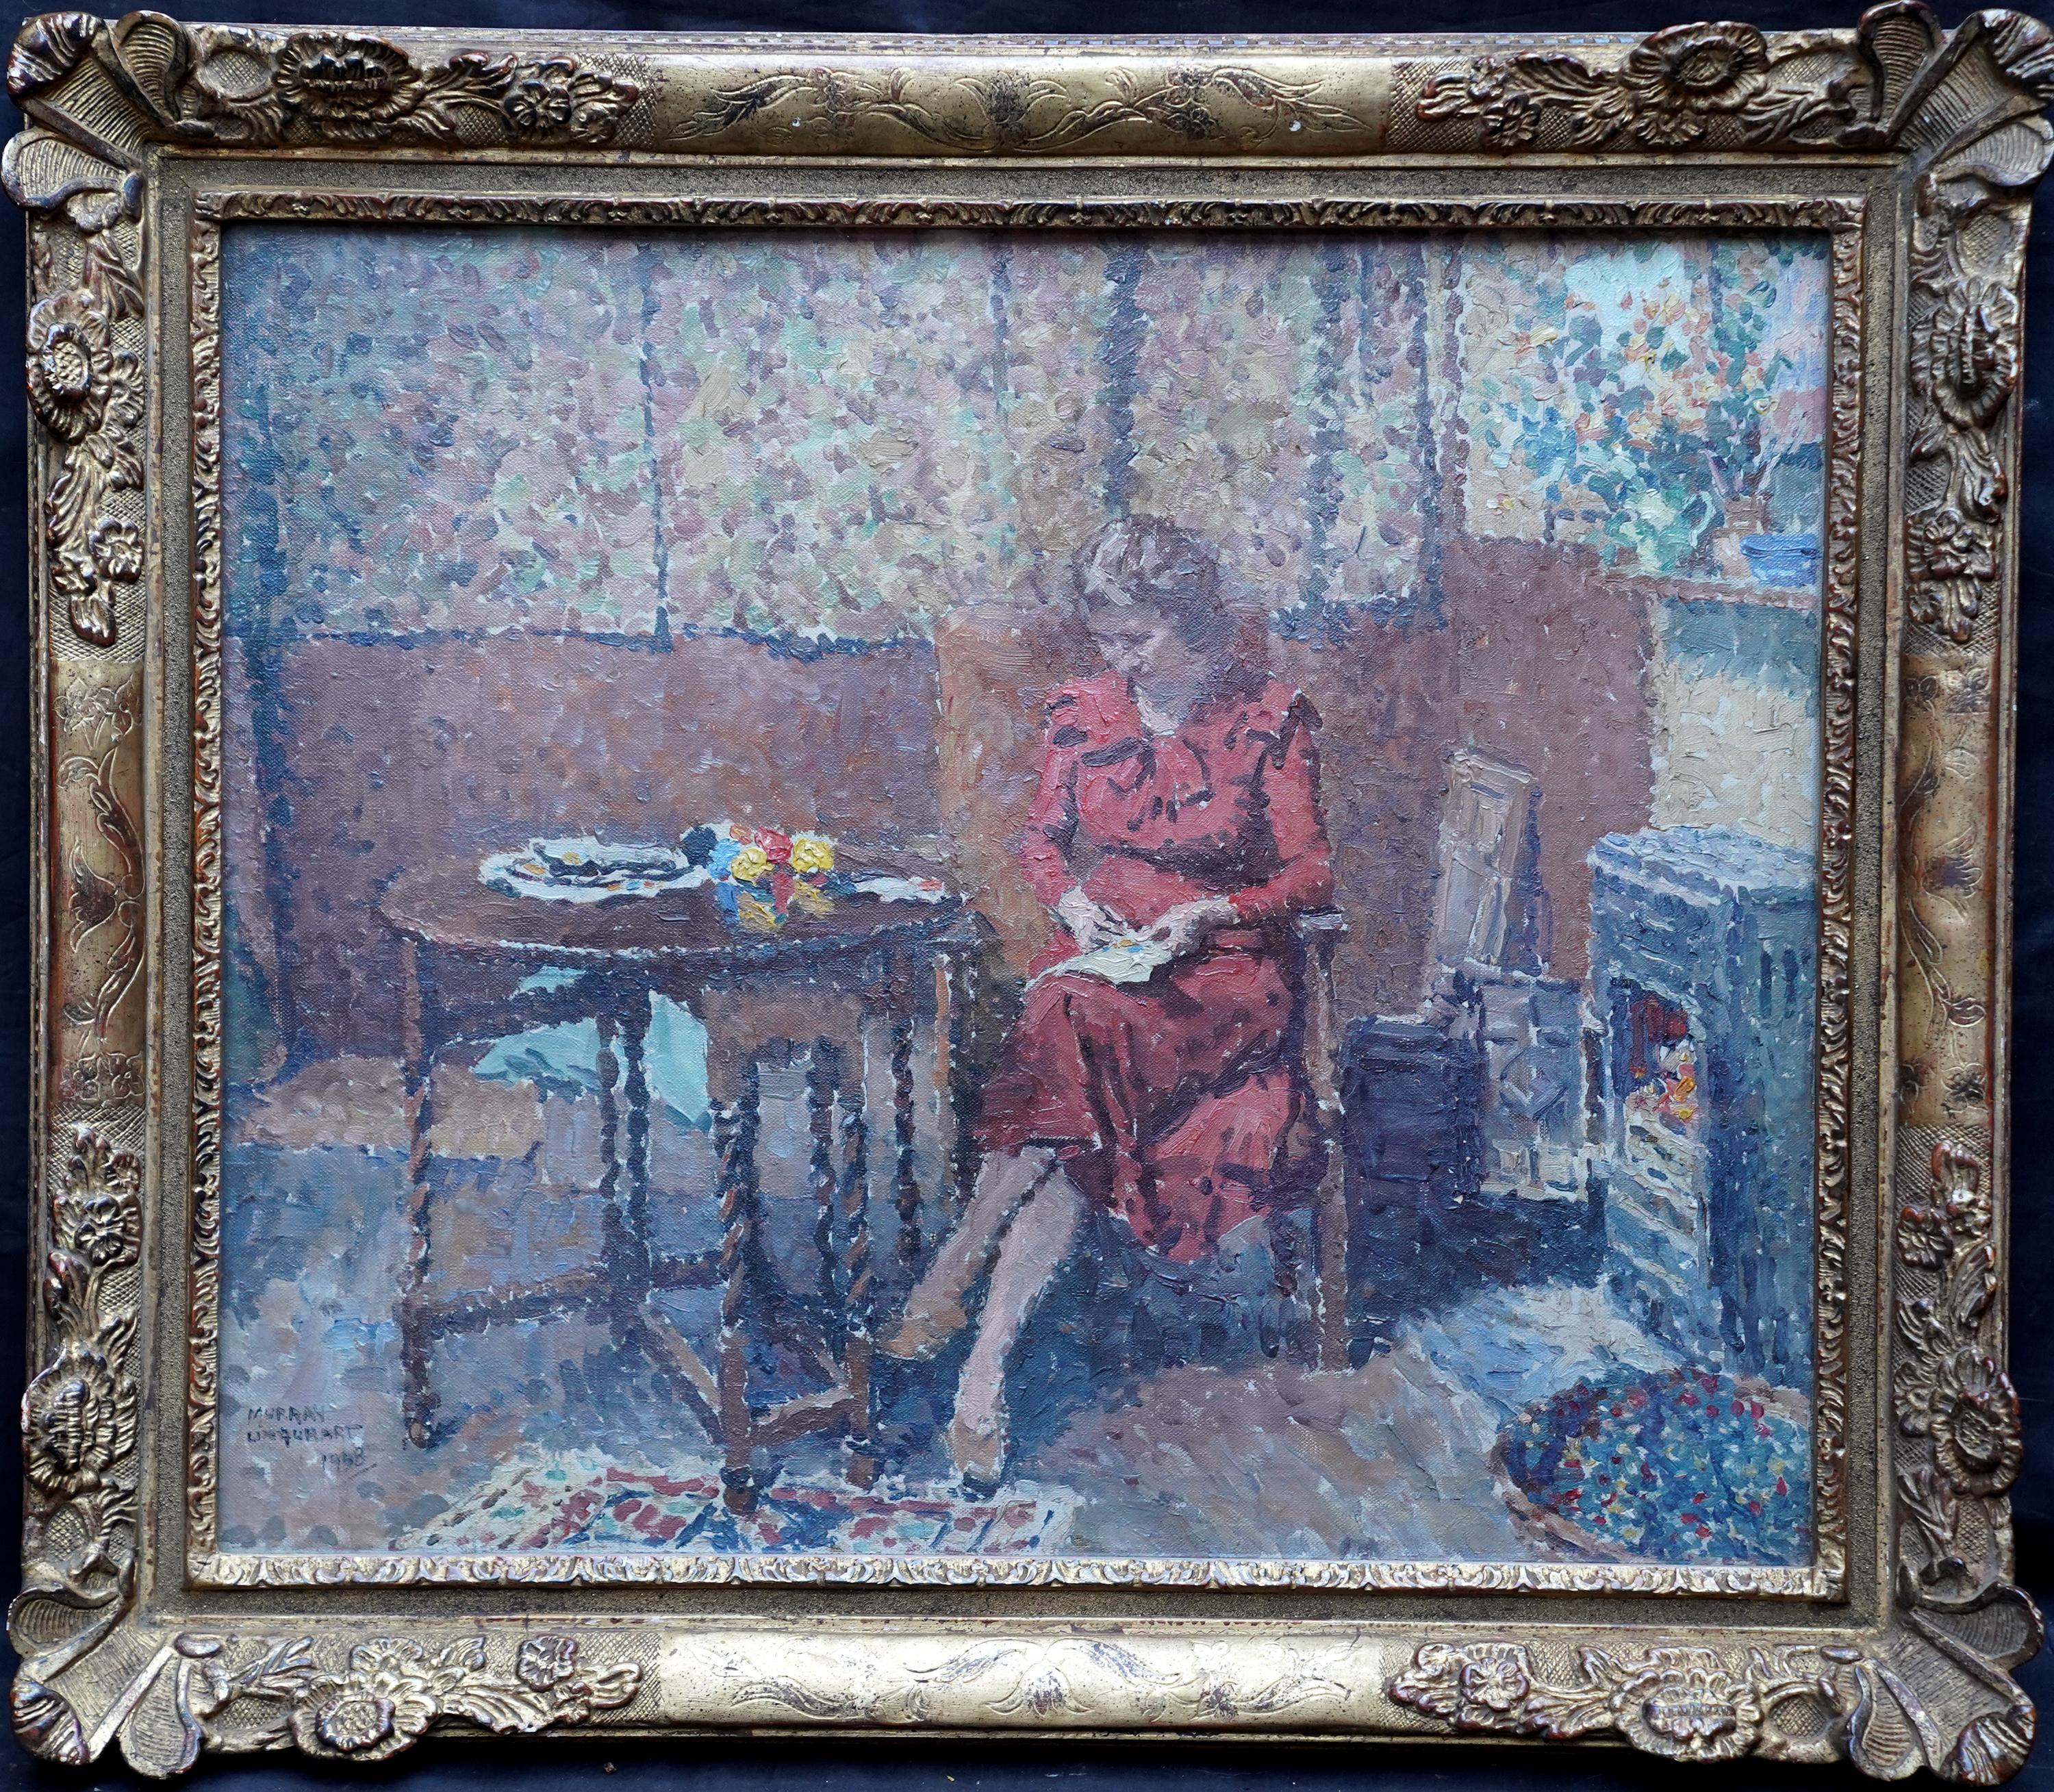 Portrait Painting Murray McNeel Caird Urquhart - Portrait de femme cousue dans un intérieur - Peinture à l'huile écossaise pointilliste des années 40